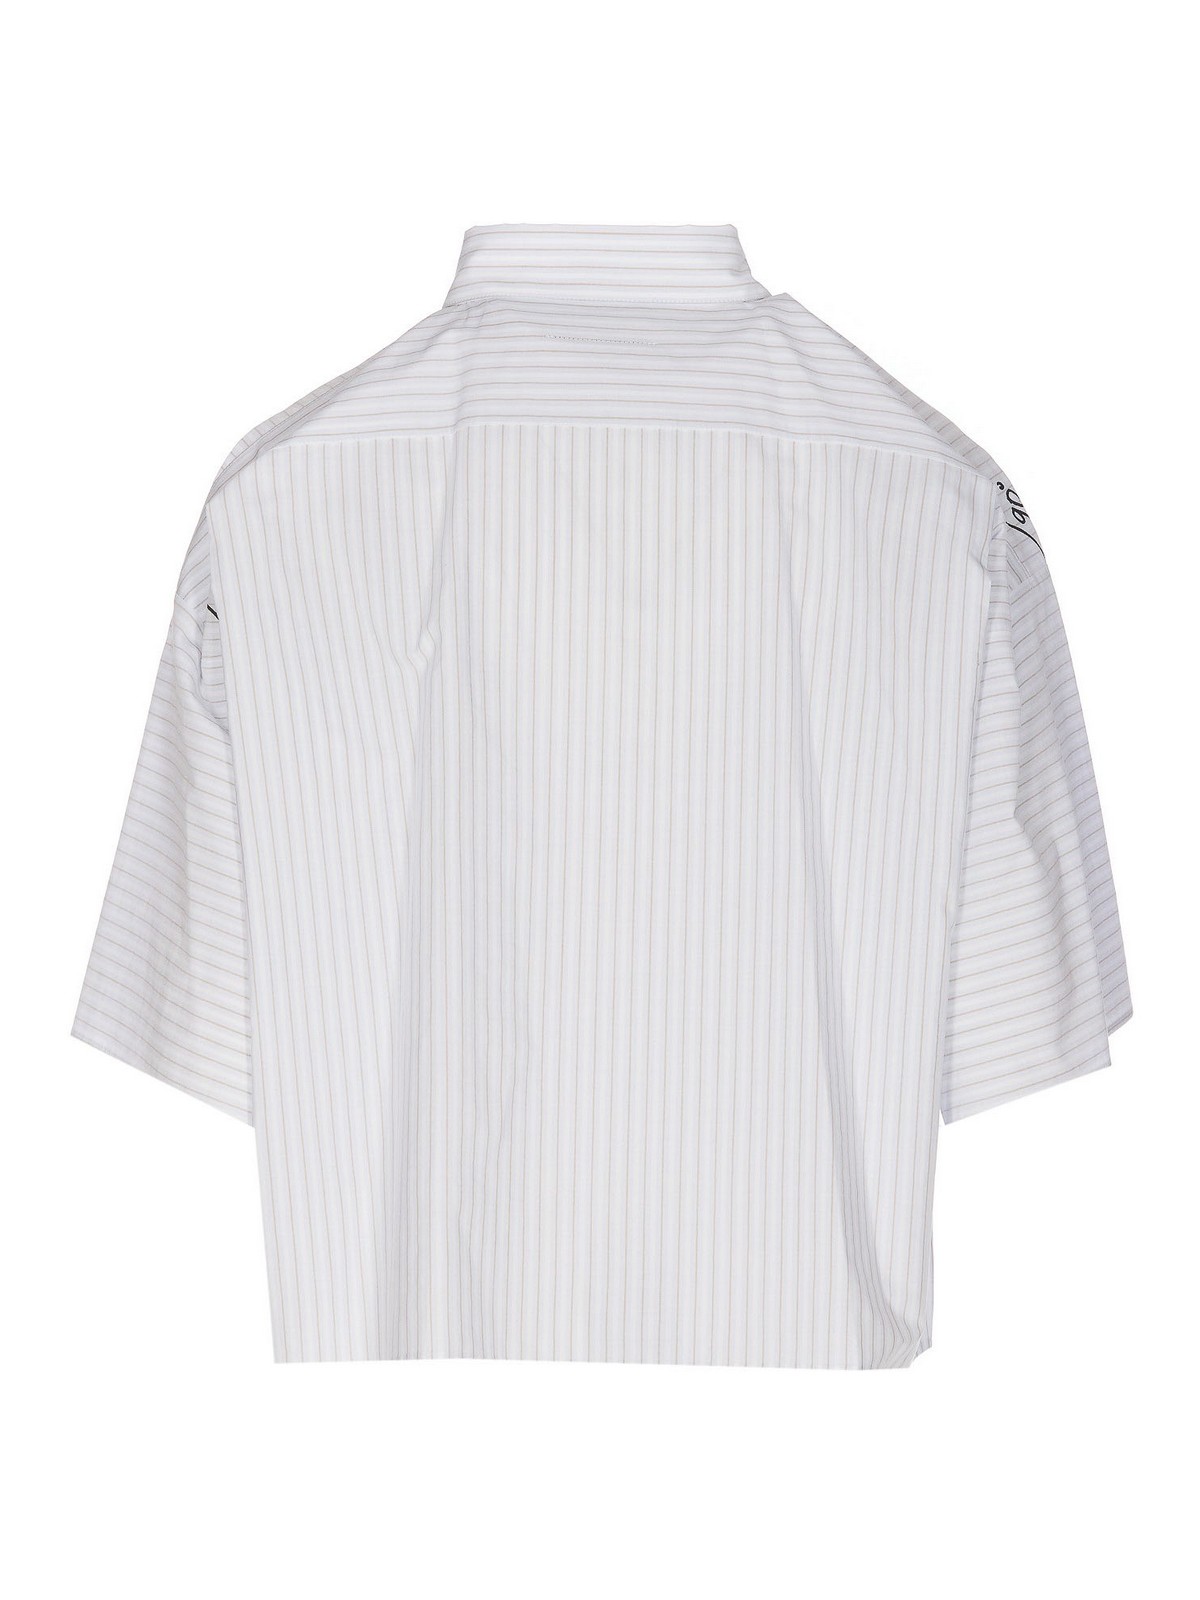 Shirts MM6 Maison Margiela - Striped cotton shirt - S52DL0198S76458001F